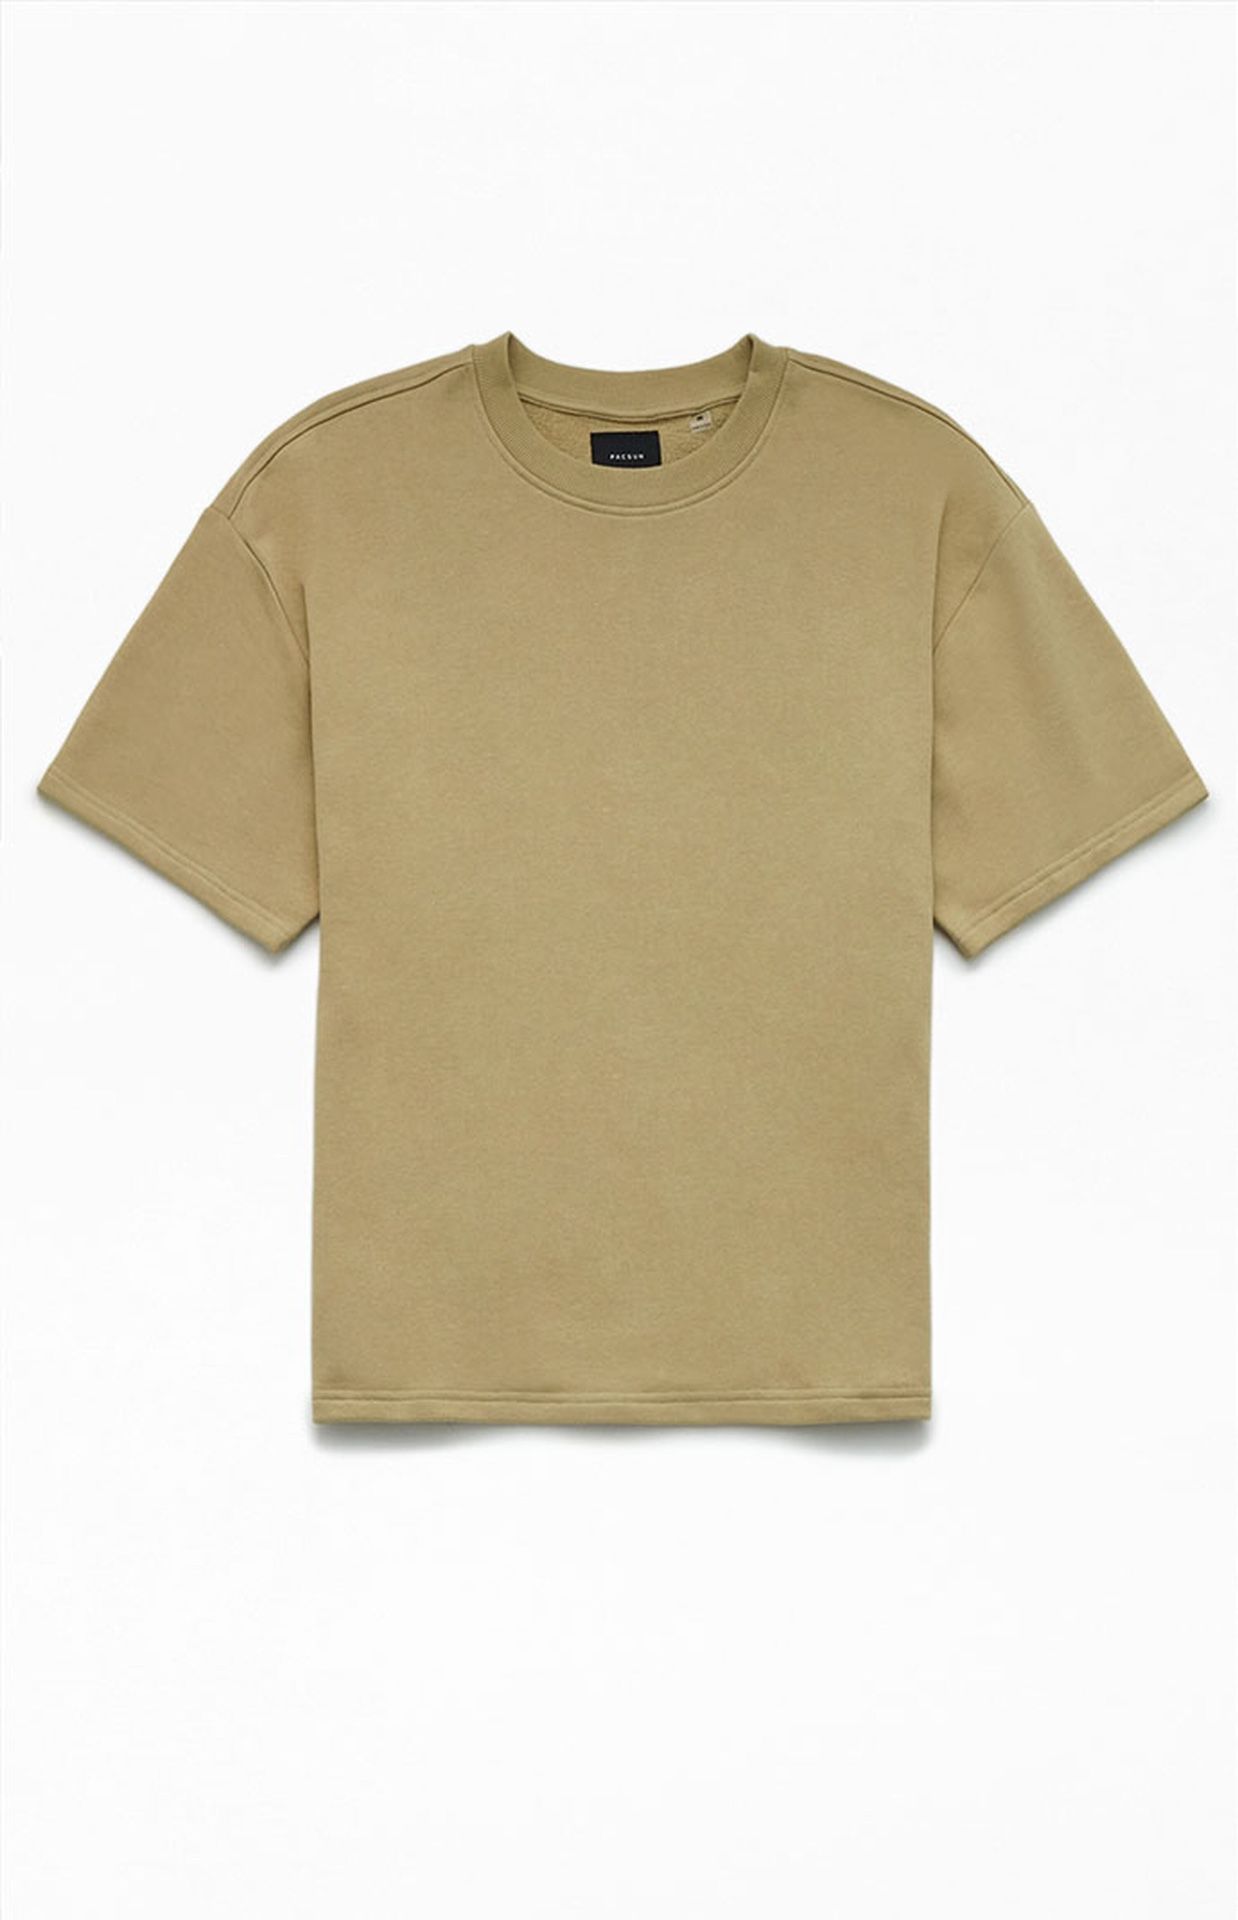 Tan PacSun Fleece T-Shirt